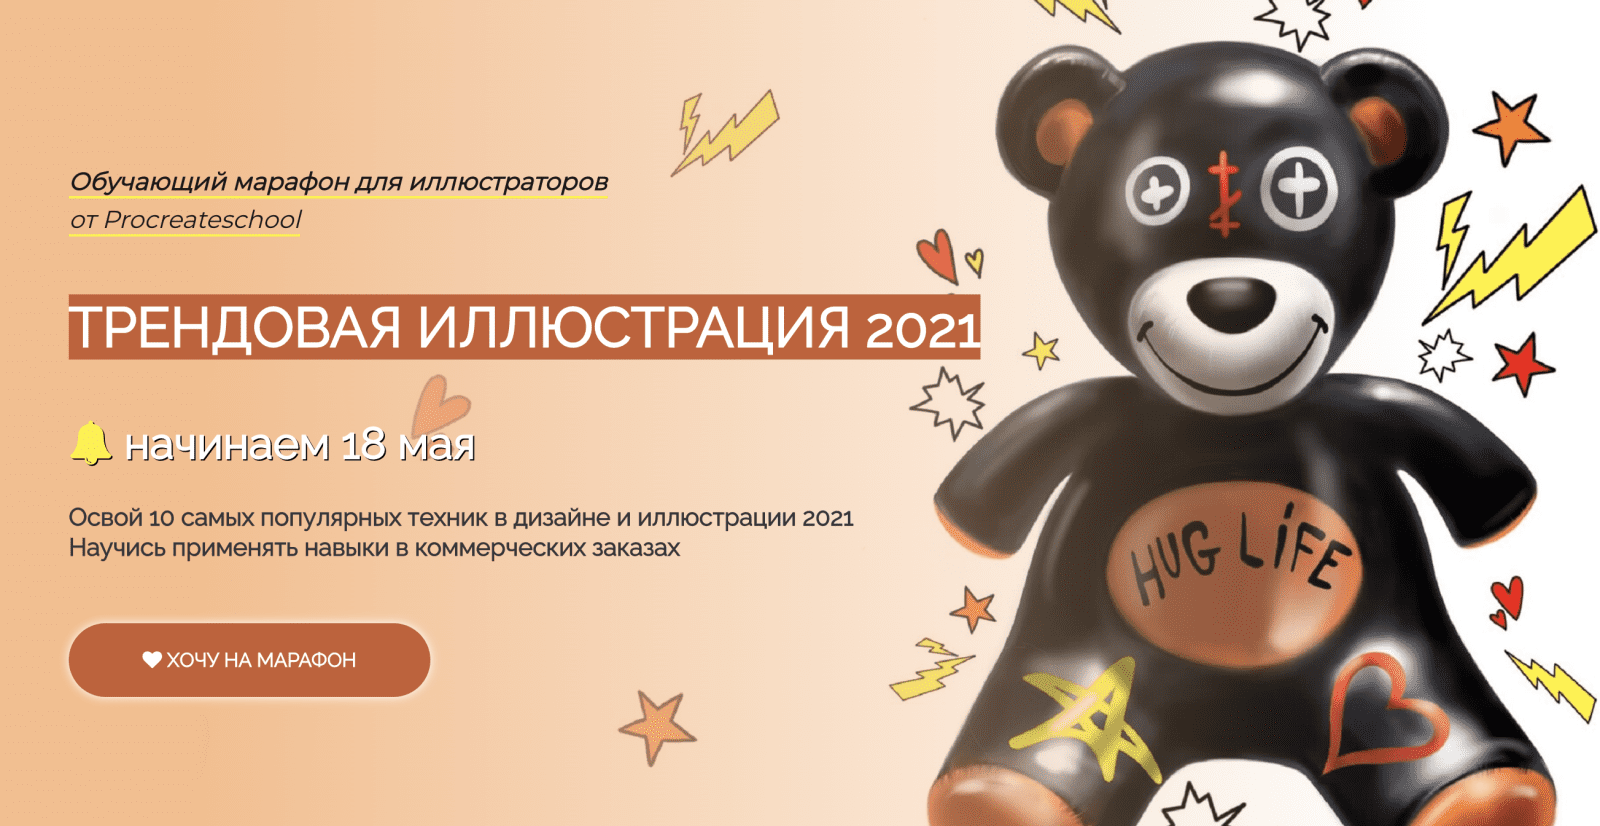 Изображение [Procreateschool] С. Скляр, Е. Назарова, К. Назаров - Трендовая иллюстрация 2021 в посте 258876